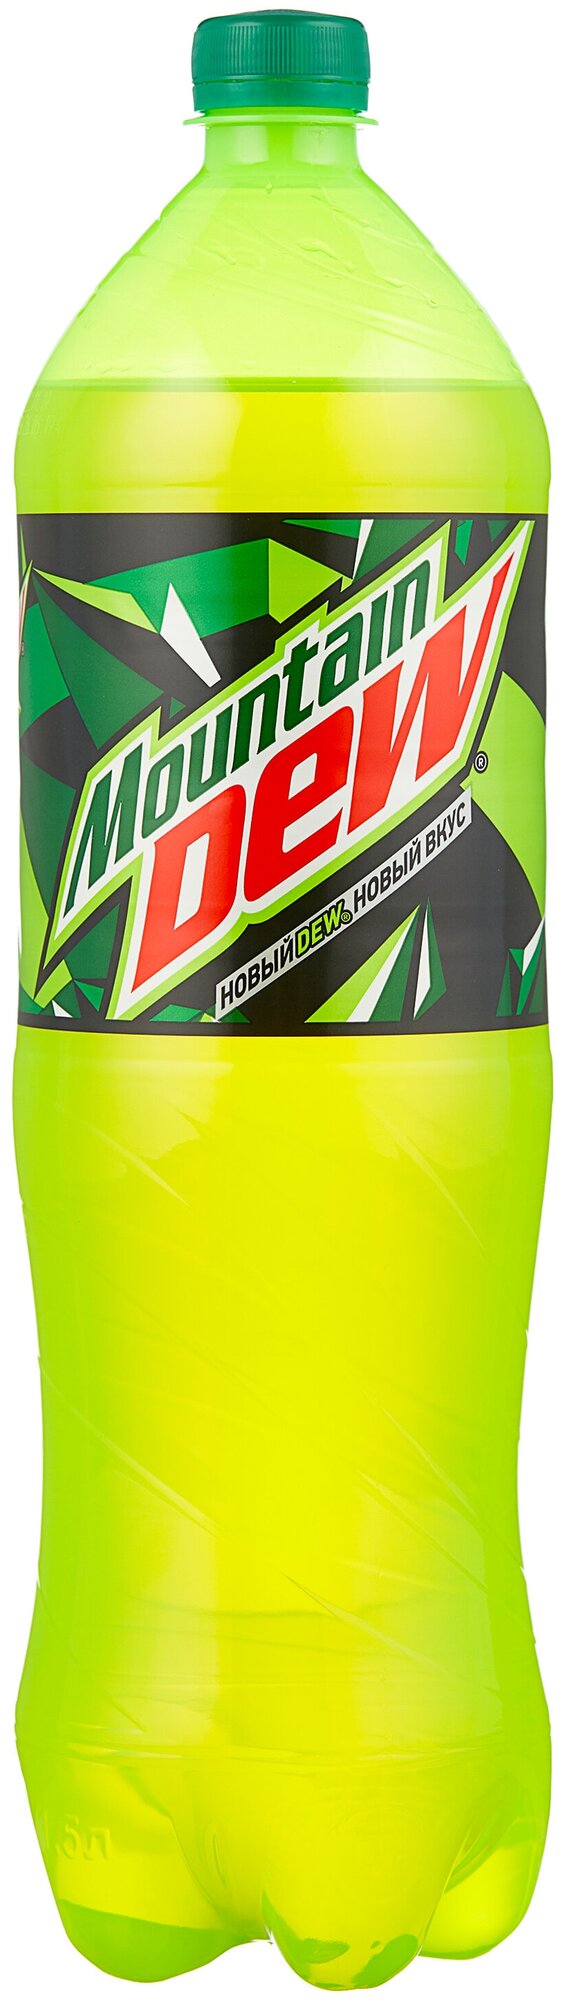 Газированный напиток Mountain Dew 1.5 л. (РФ) - 6 бутылок - фотография № 5